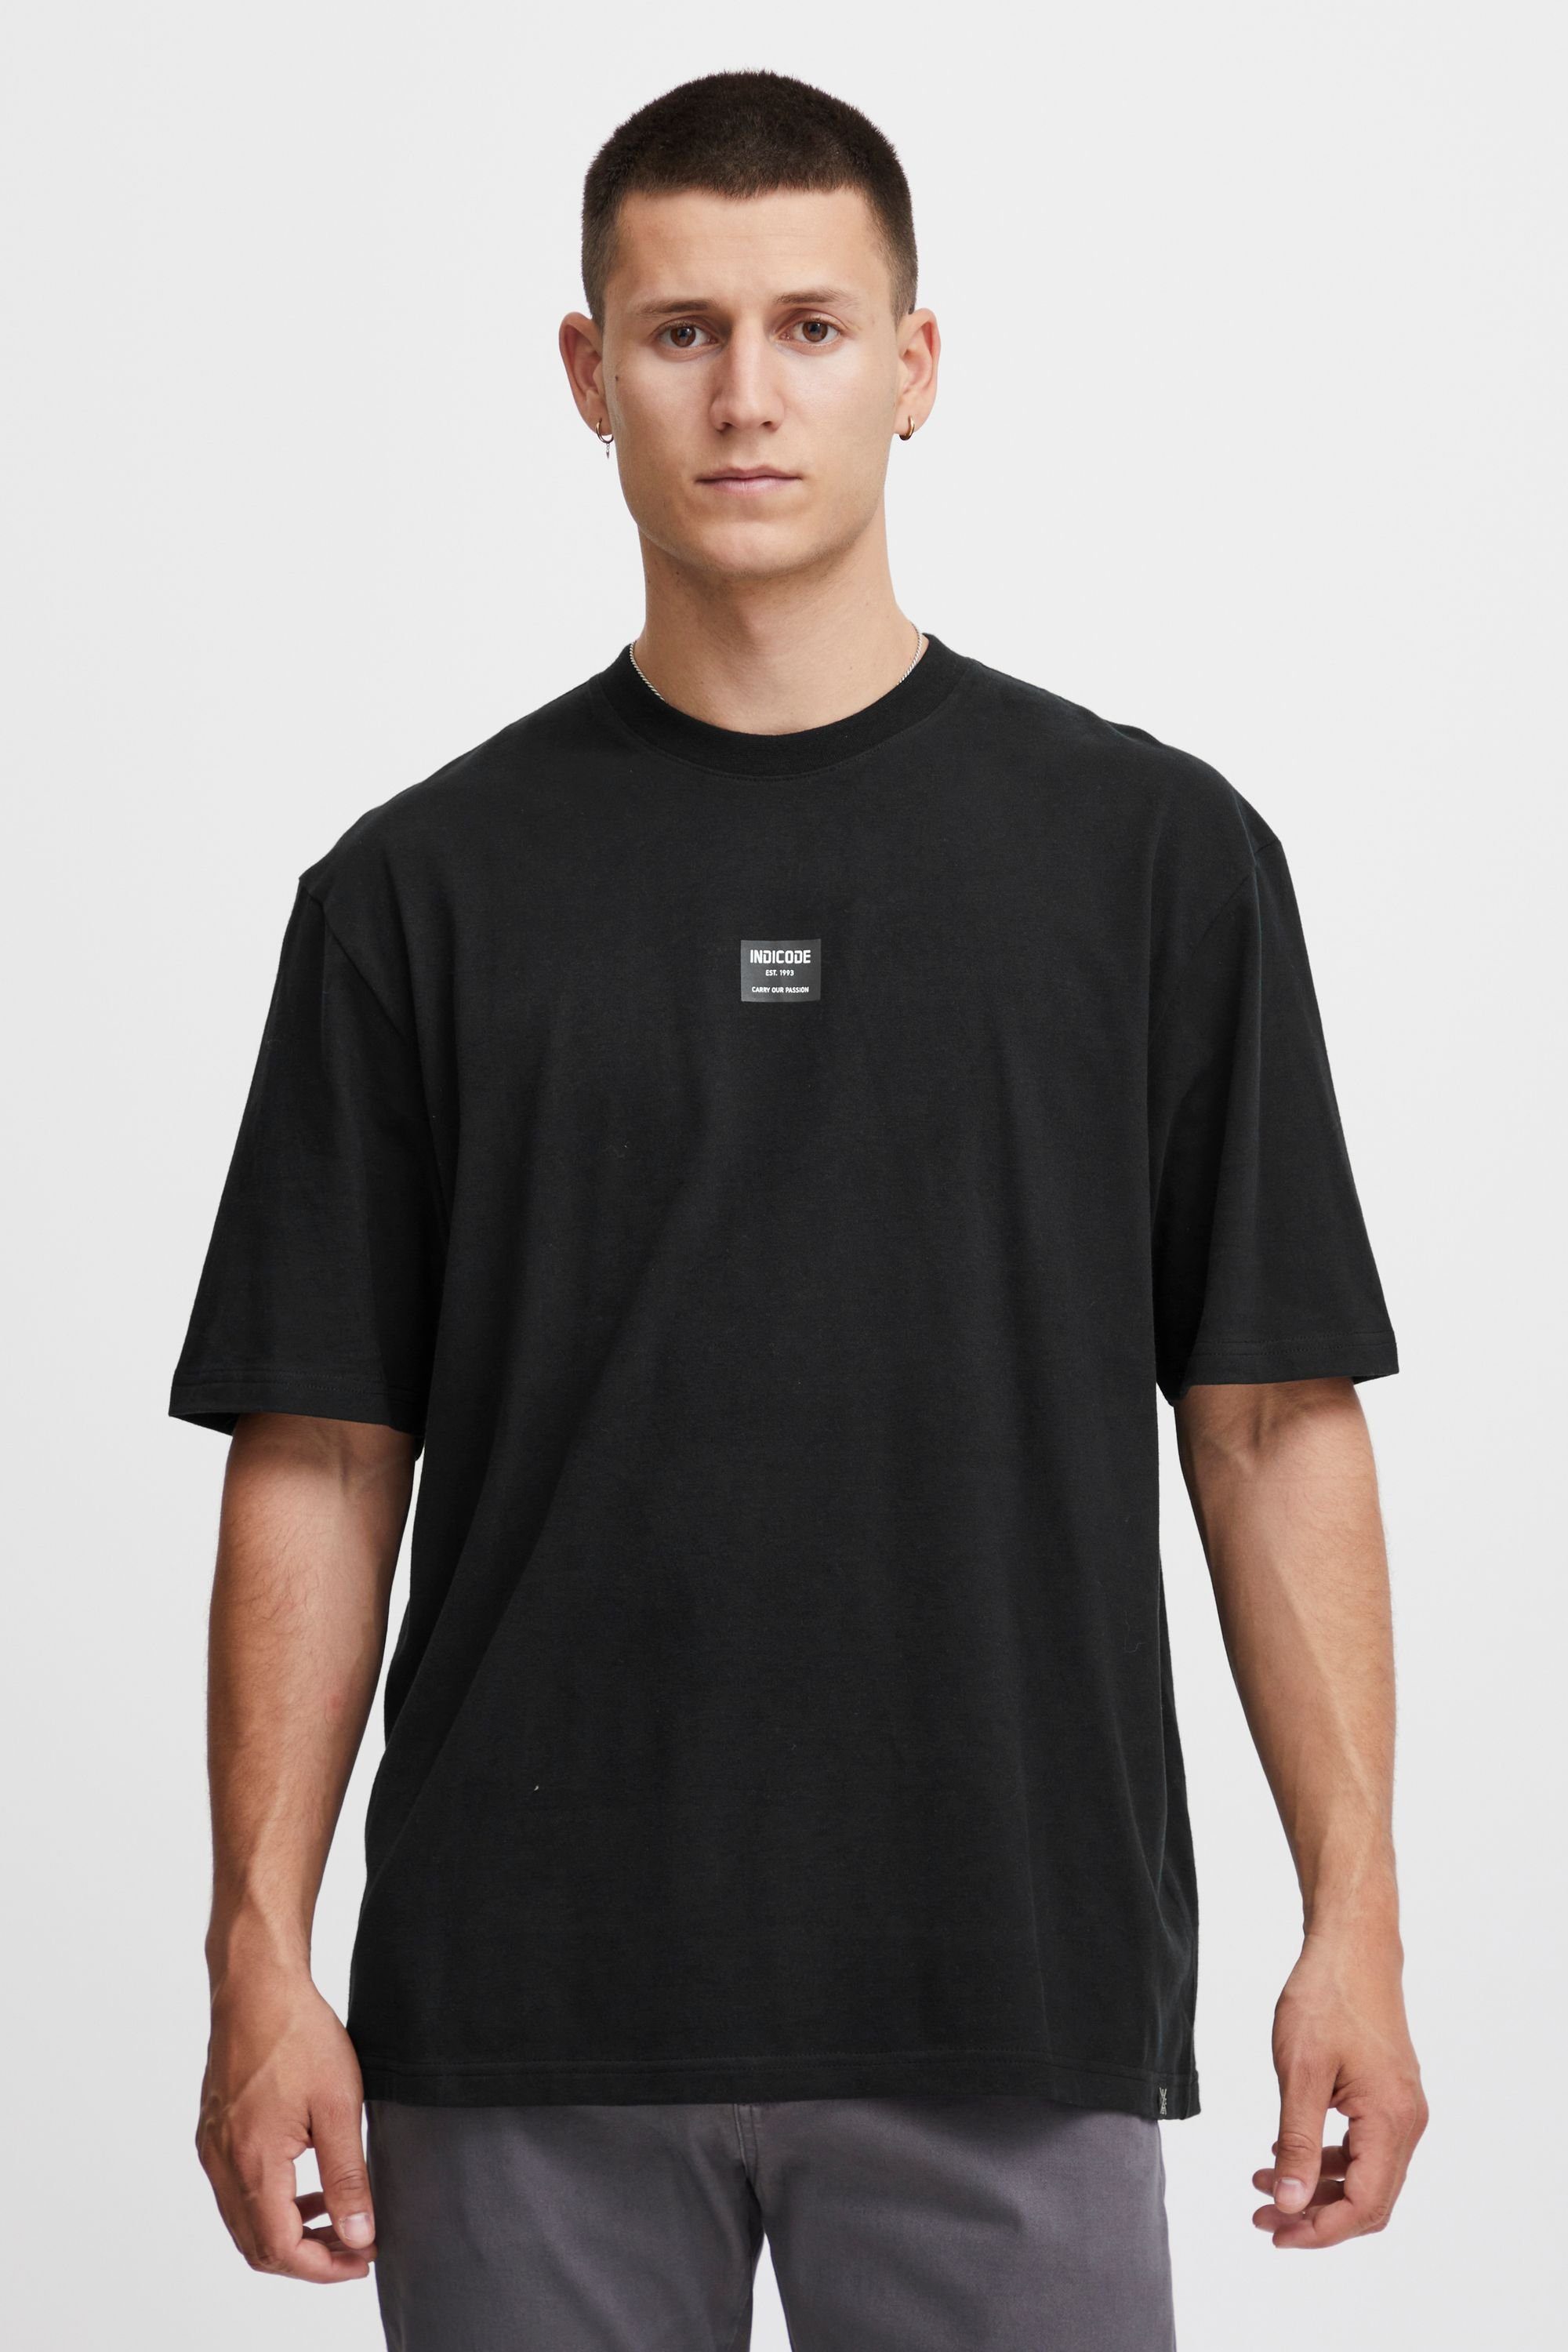 Indicode T-Shirt Black (999)